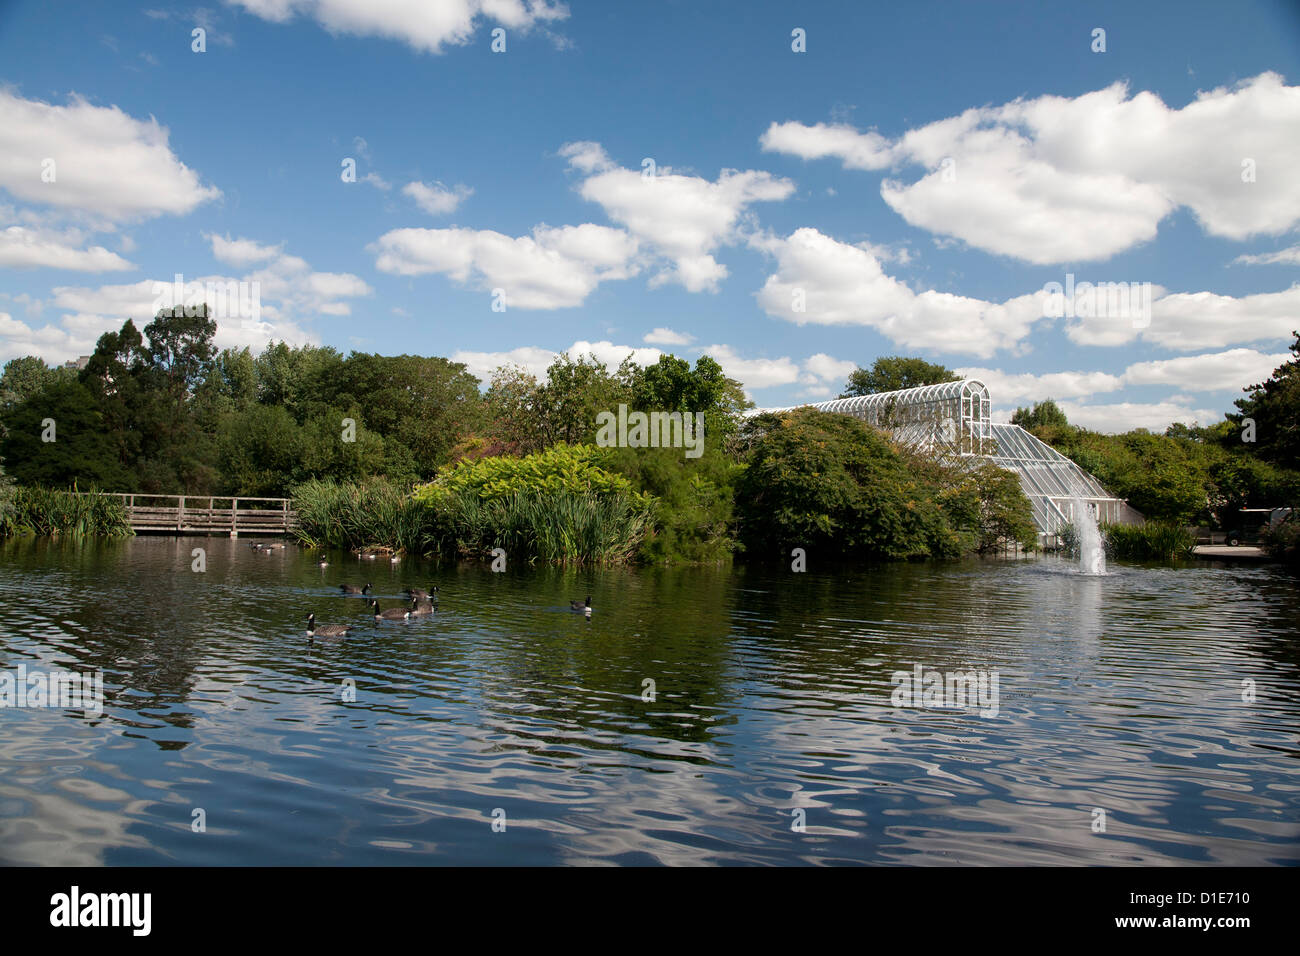 Canards par Fontaine et véranda sur Tamise, Royal Botanic Gardens, Kew, près de Richmond, Surrey, Angleterre, Royaume-Uni Banque D'Images